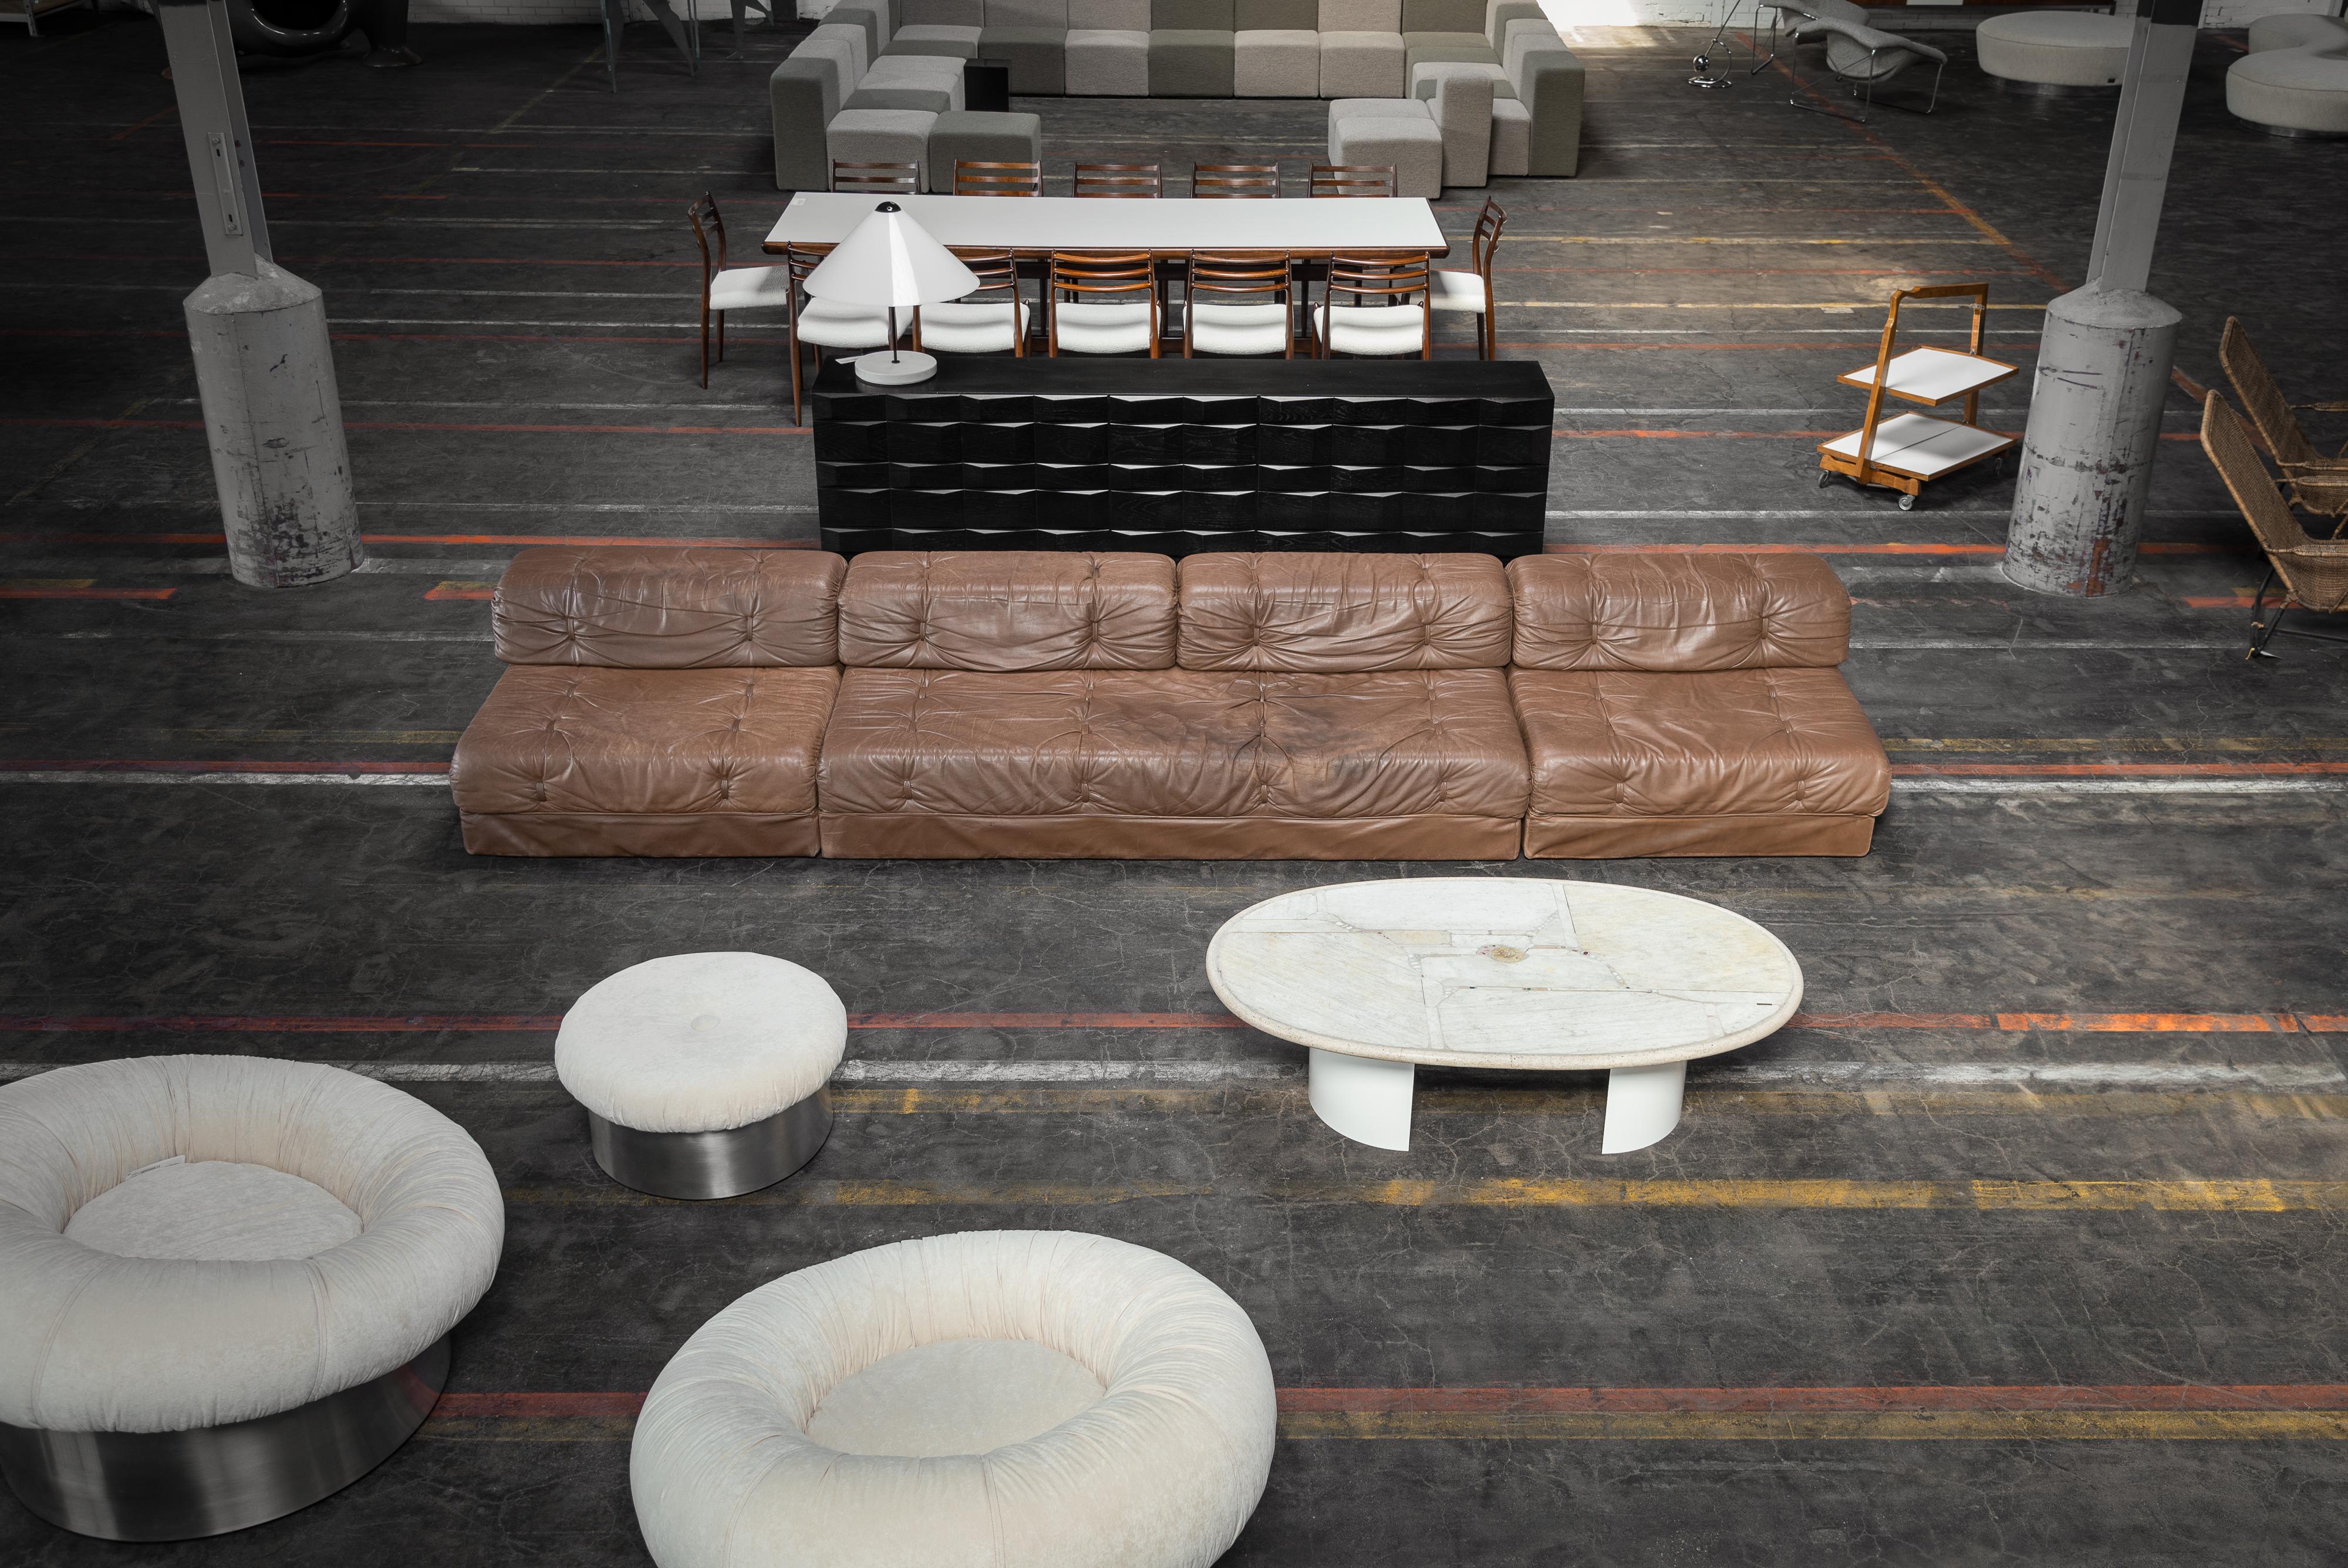 Superbe canapé modulaire en cuir Wittmann Atrium fabriqué en Autriche en 1970. Ce canapé est fabriqué en cuir brun foncé et se compose d'une pièce à deux places et de deux pièces à une place, formant ainsi un système modulaire flexible. Il présente